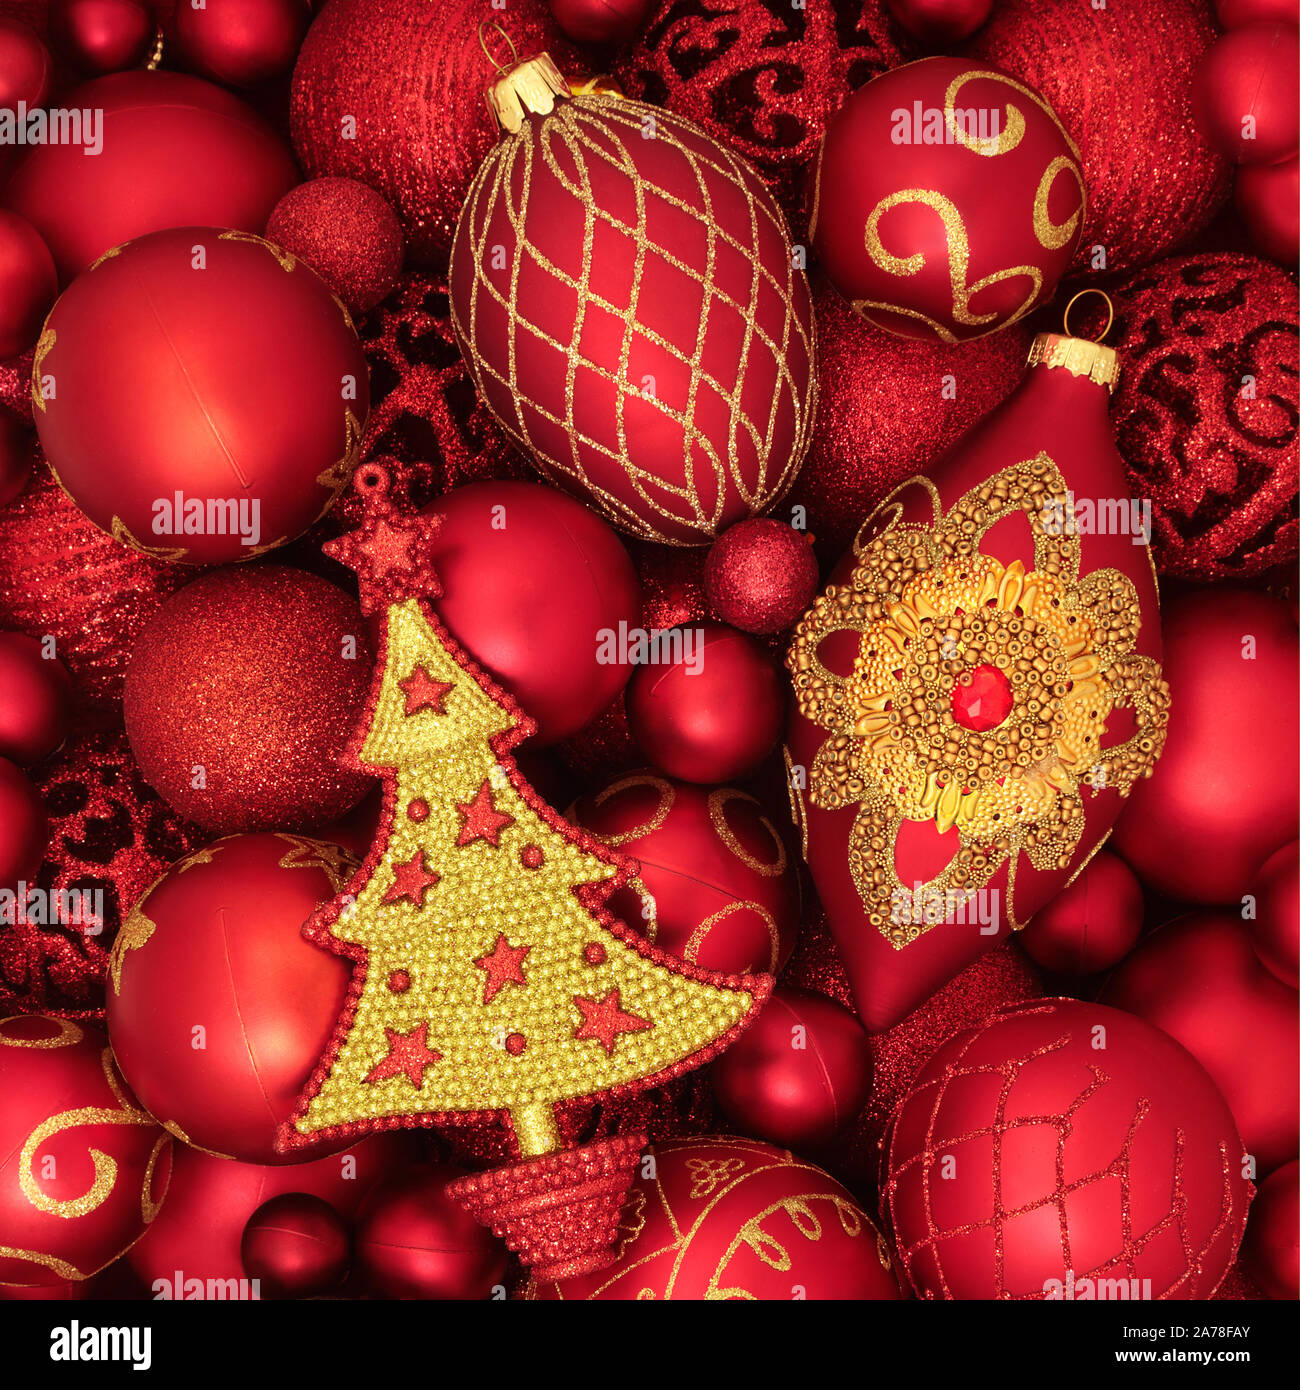 Rouge et Or Luxury bauble Christmas Tree decorations formant un motif de fond. Point de vue traditionnel pour les fêtes. Banque D'Images